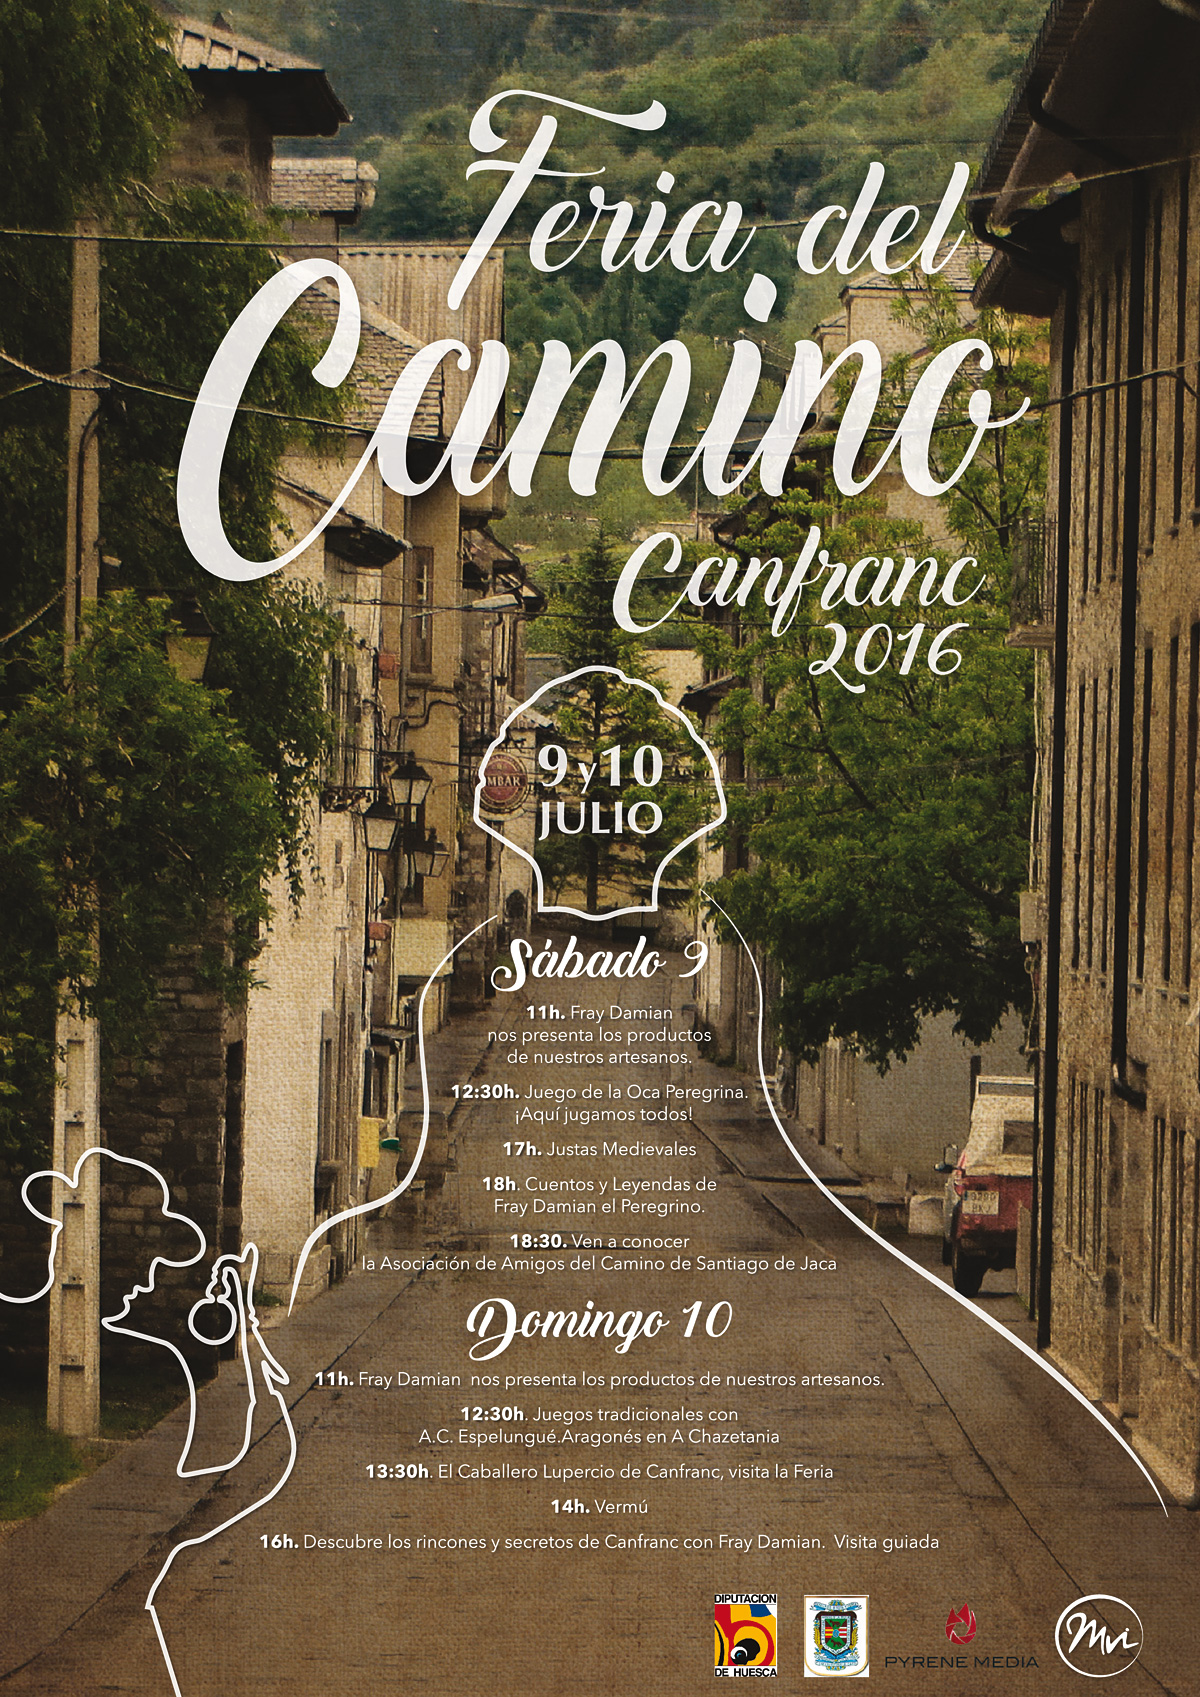 Feria del Camino Canfranc 2016